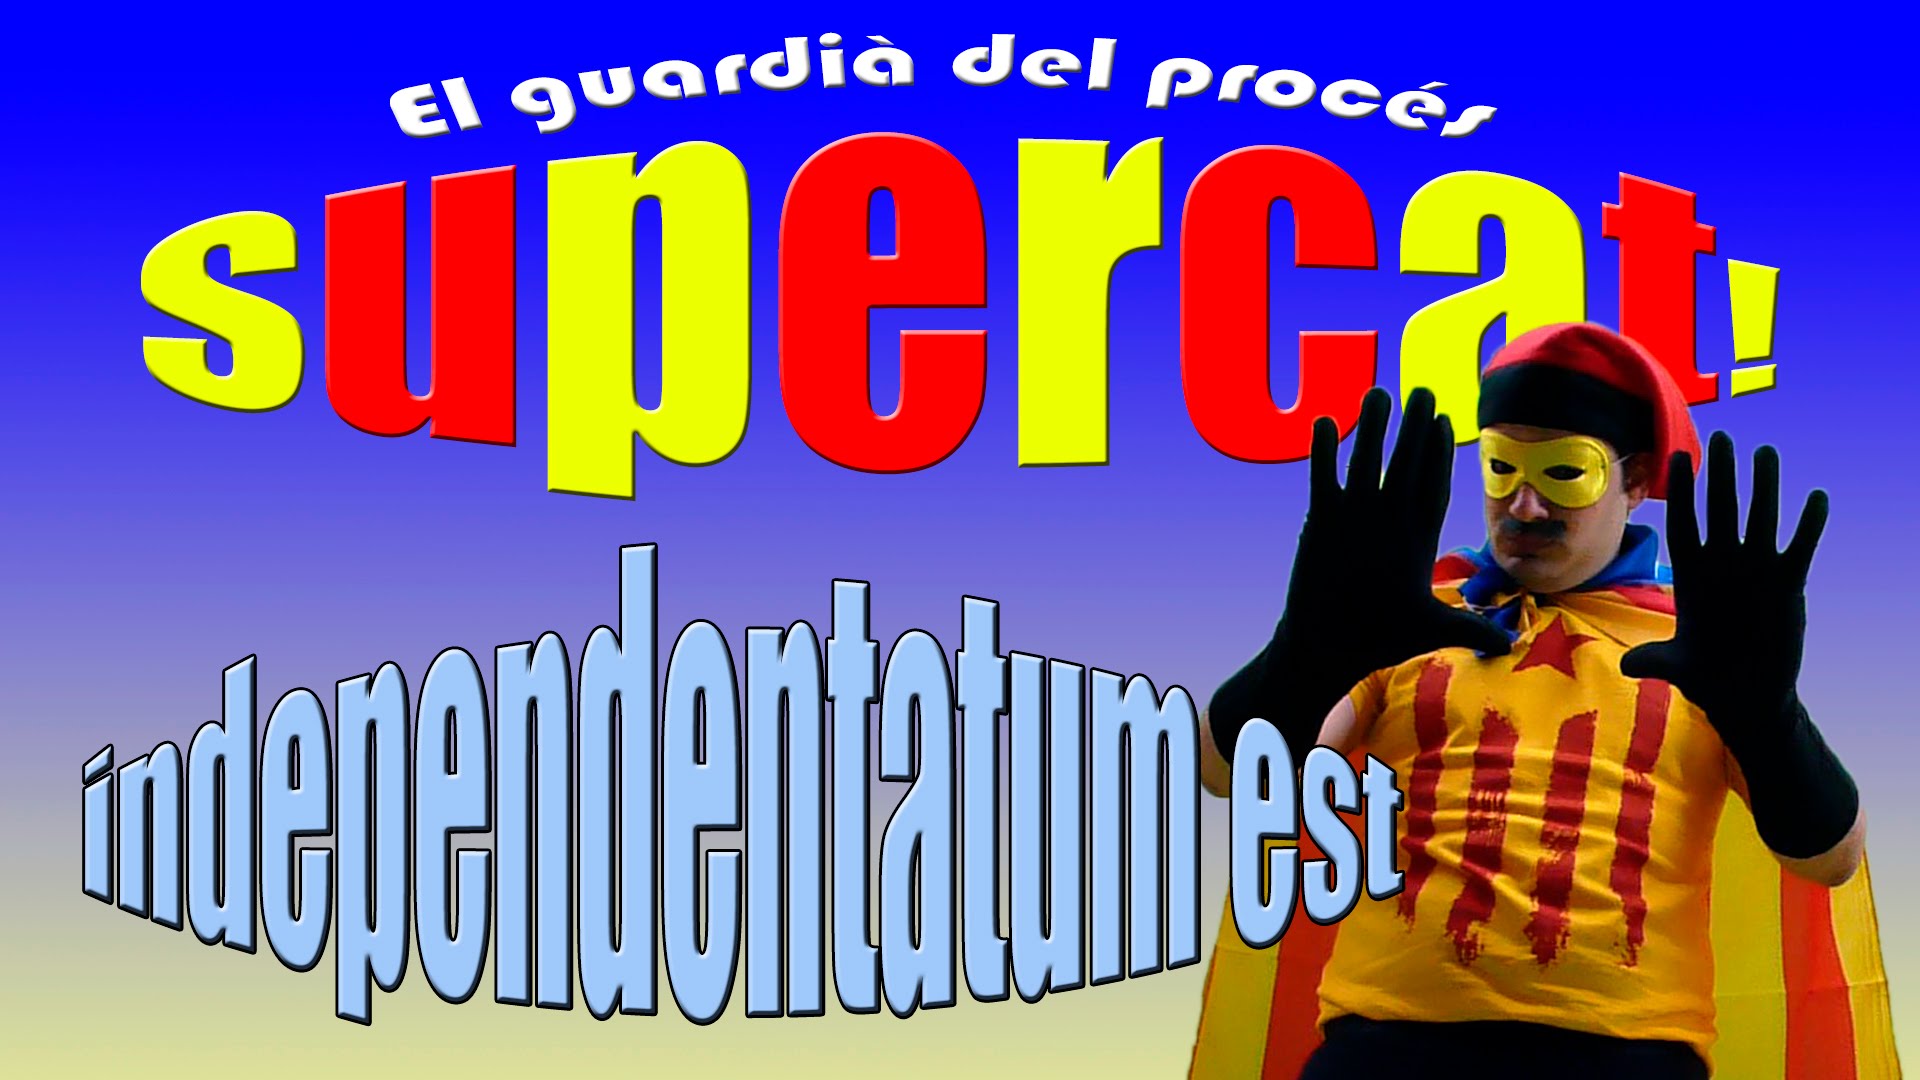 SuperCat - El guardià del Procés - Capítol 7 - Independentatum est de SuperCat